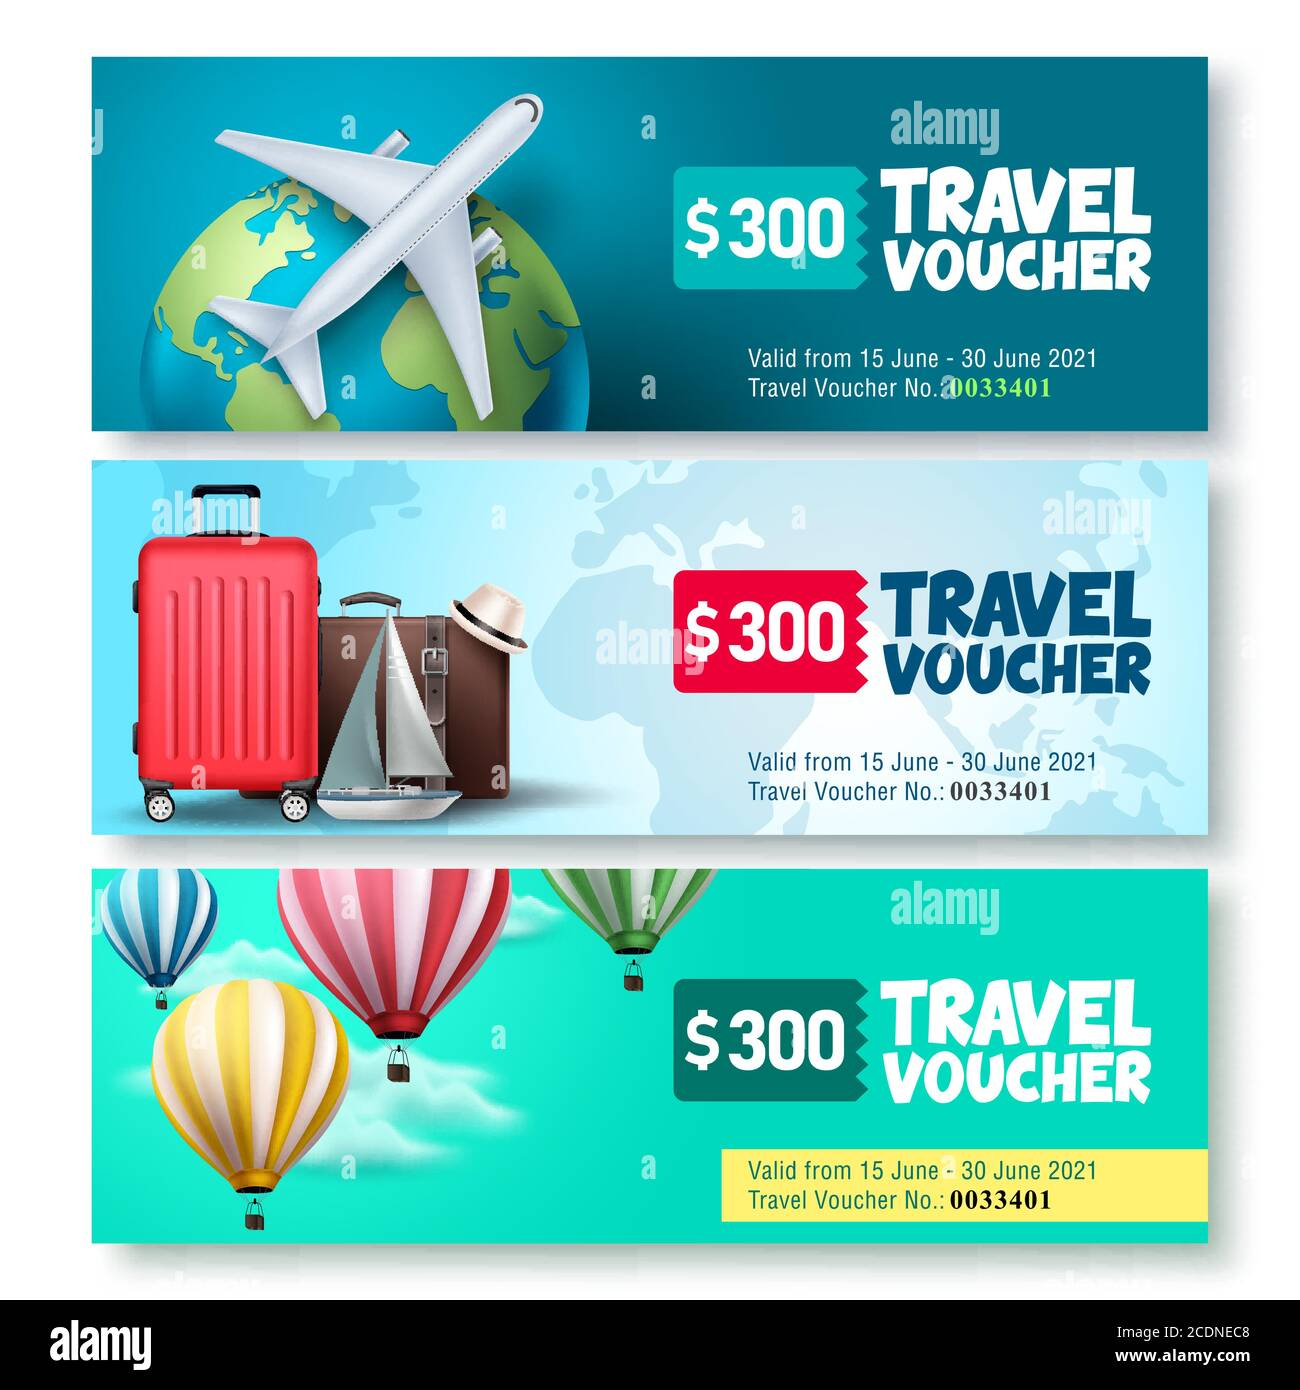 Travel voucher template vector set